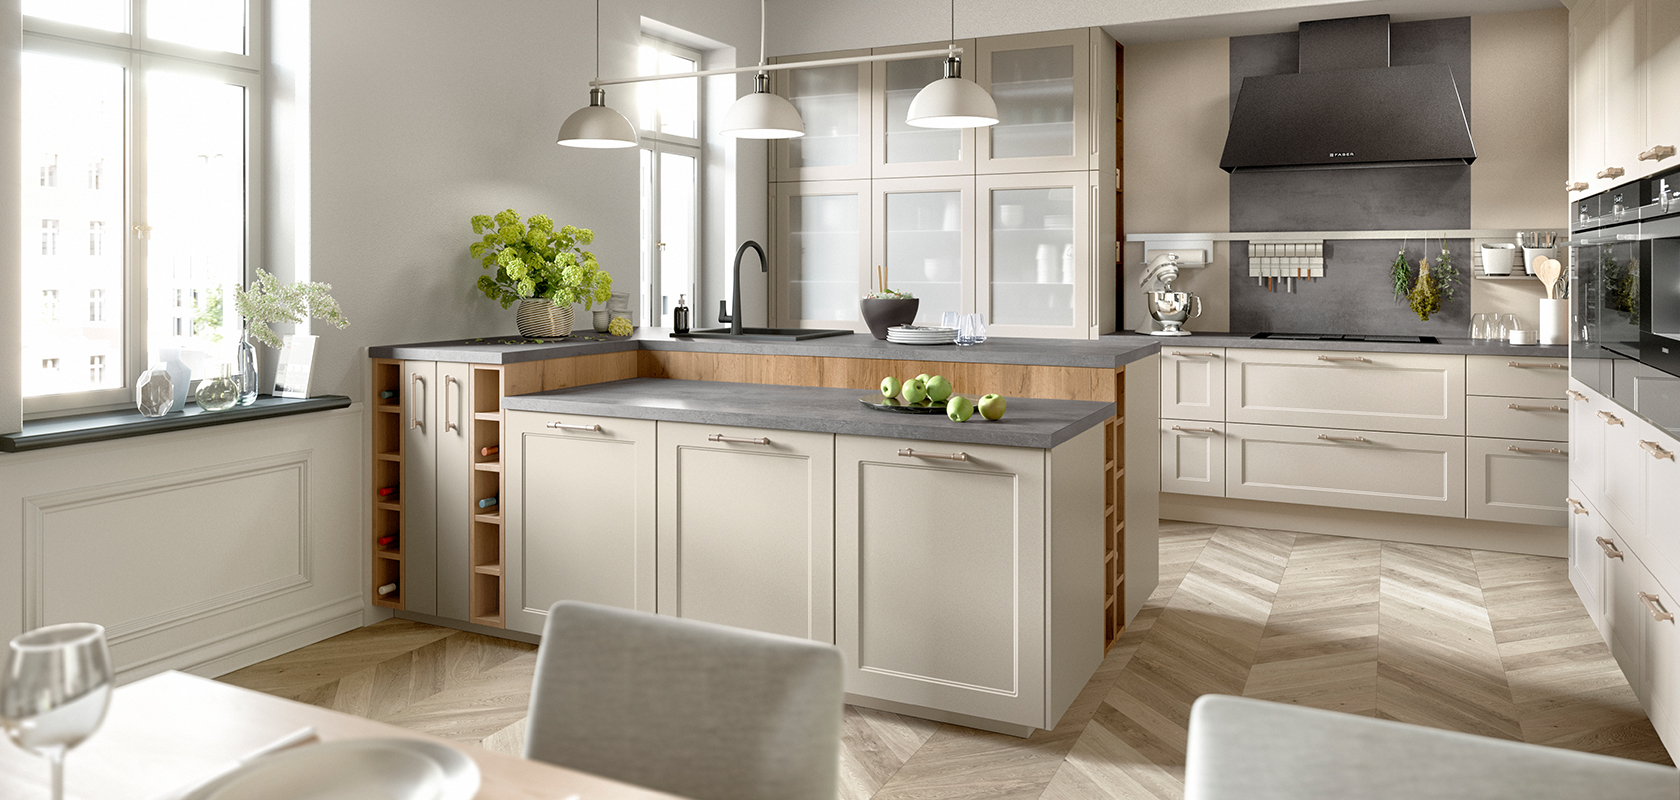 Intérieur de cuisine élégant avec lumière naturelle, comprenant un sol en bois, des armoires beige, des appareils modernes et une ambiance chaleureuse et accueillante.